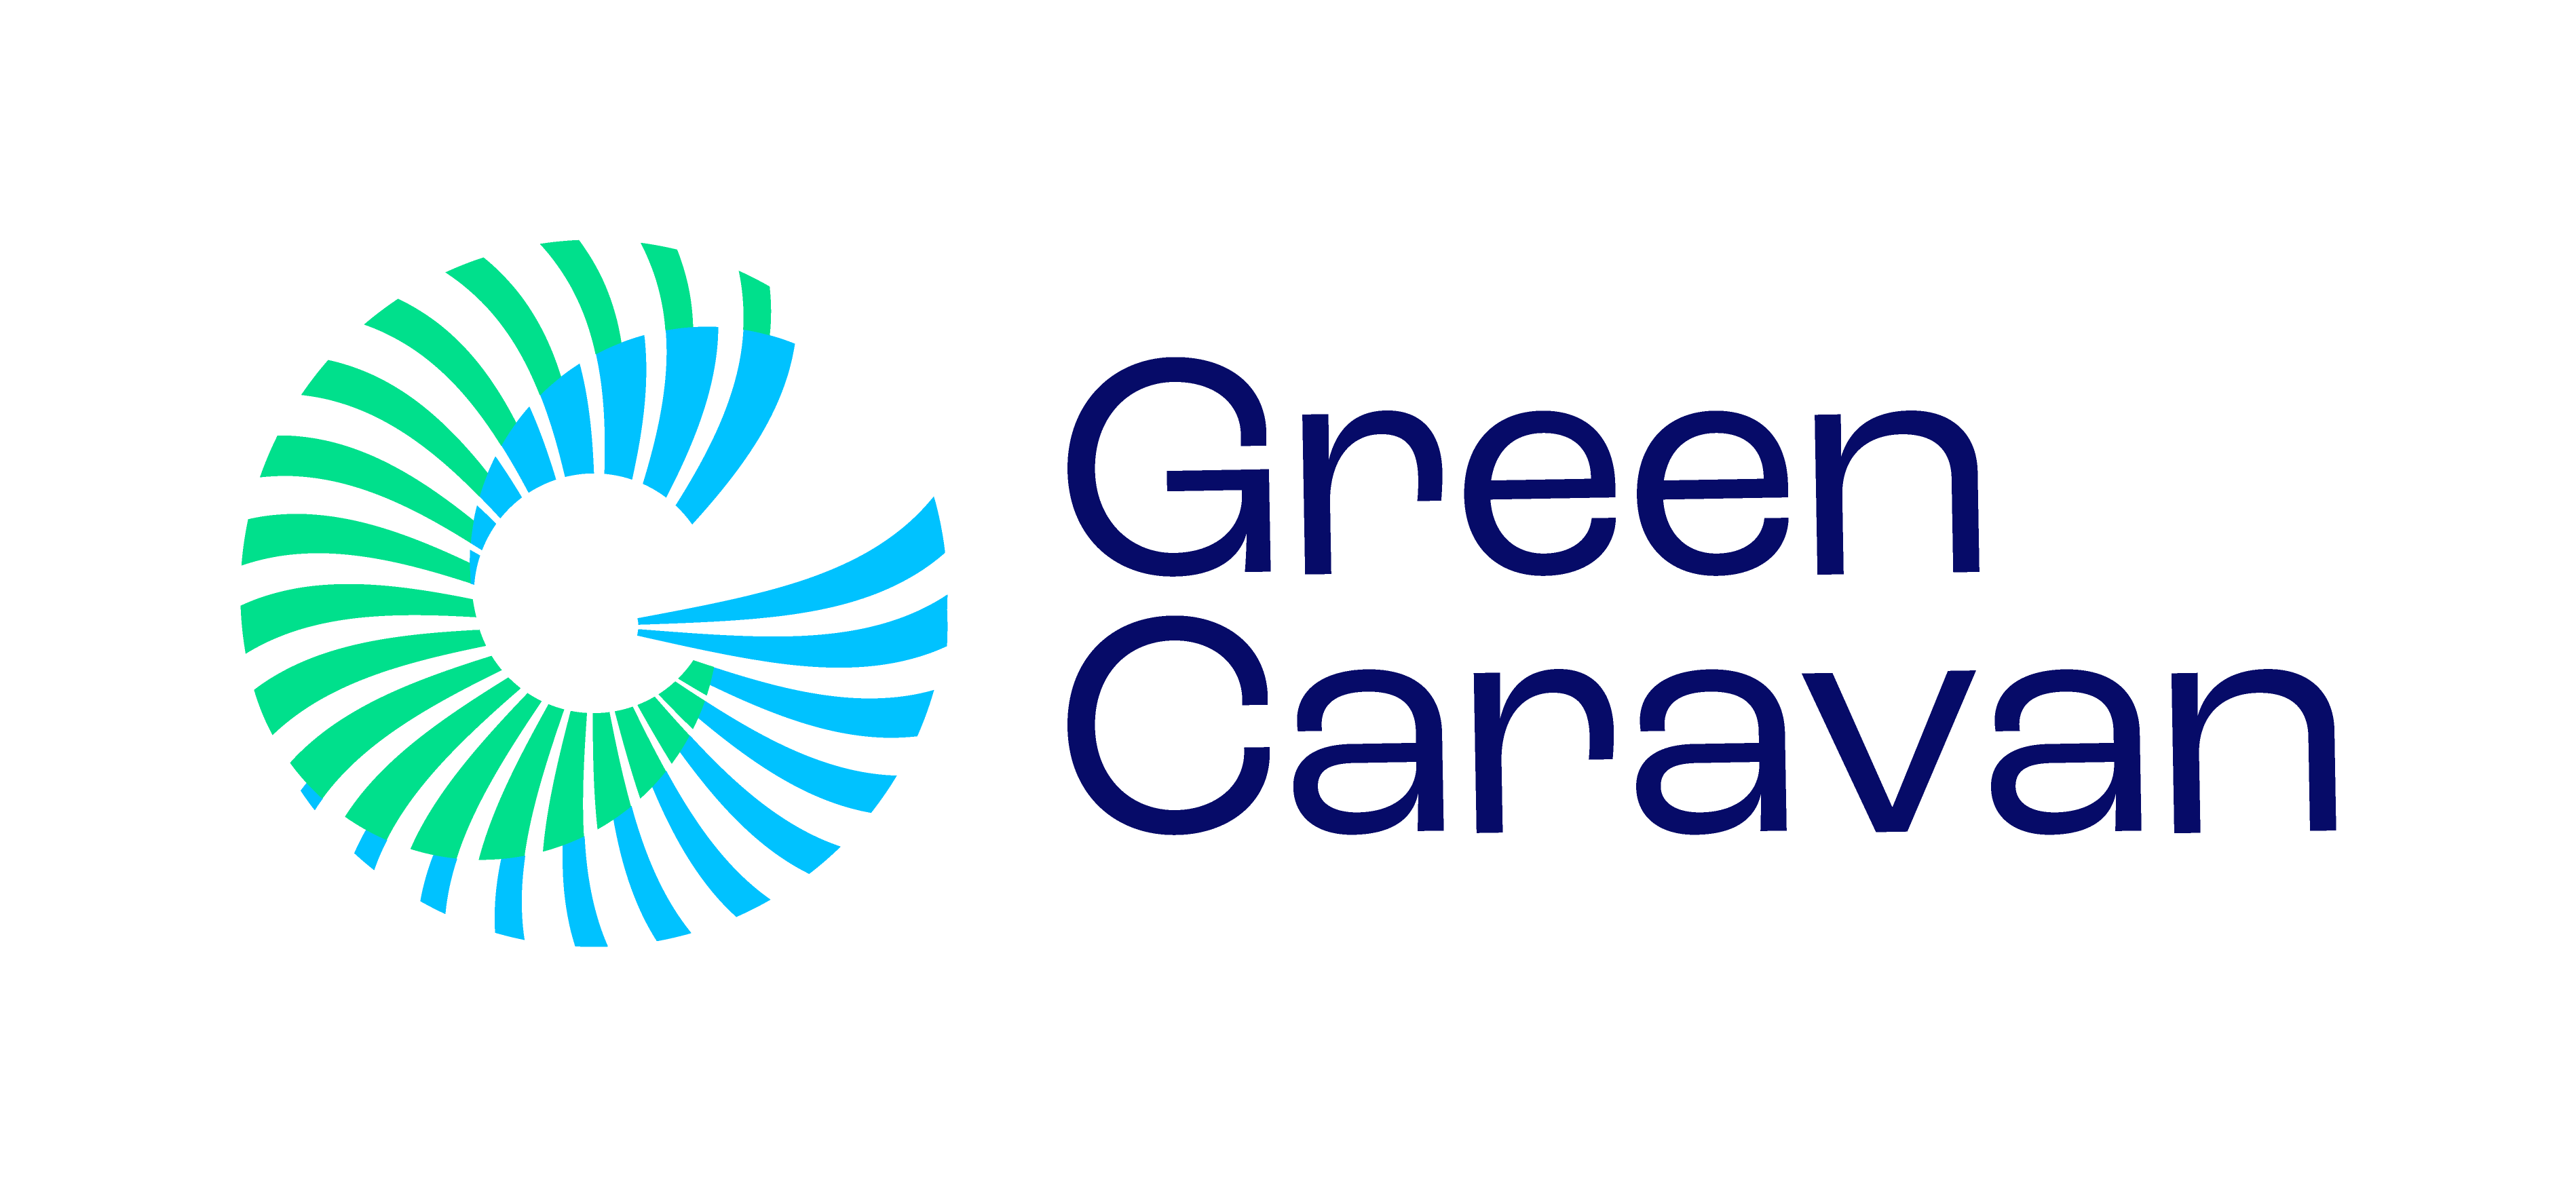 Green Caravan